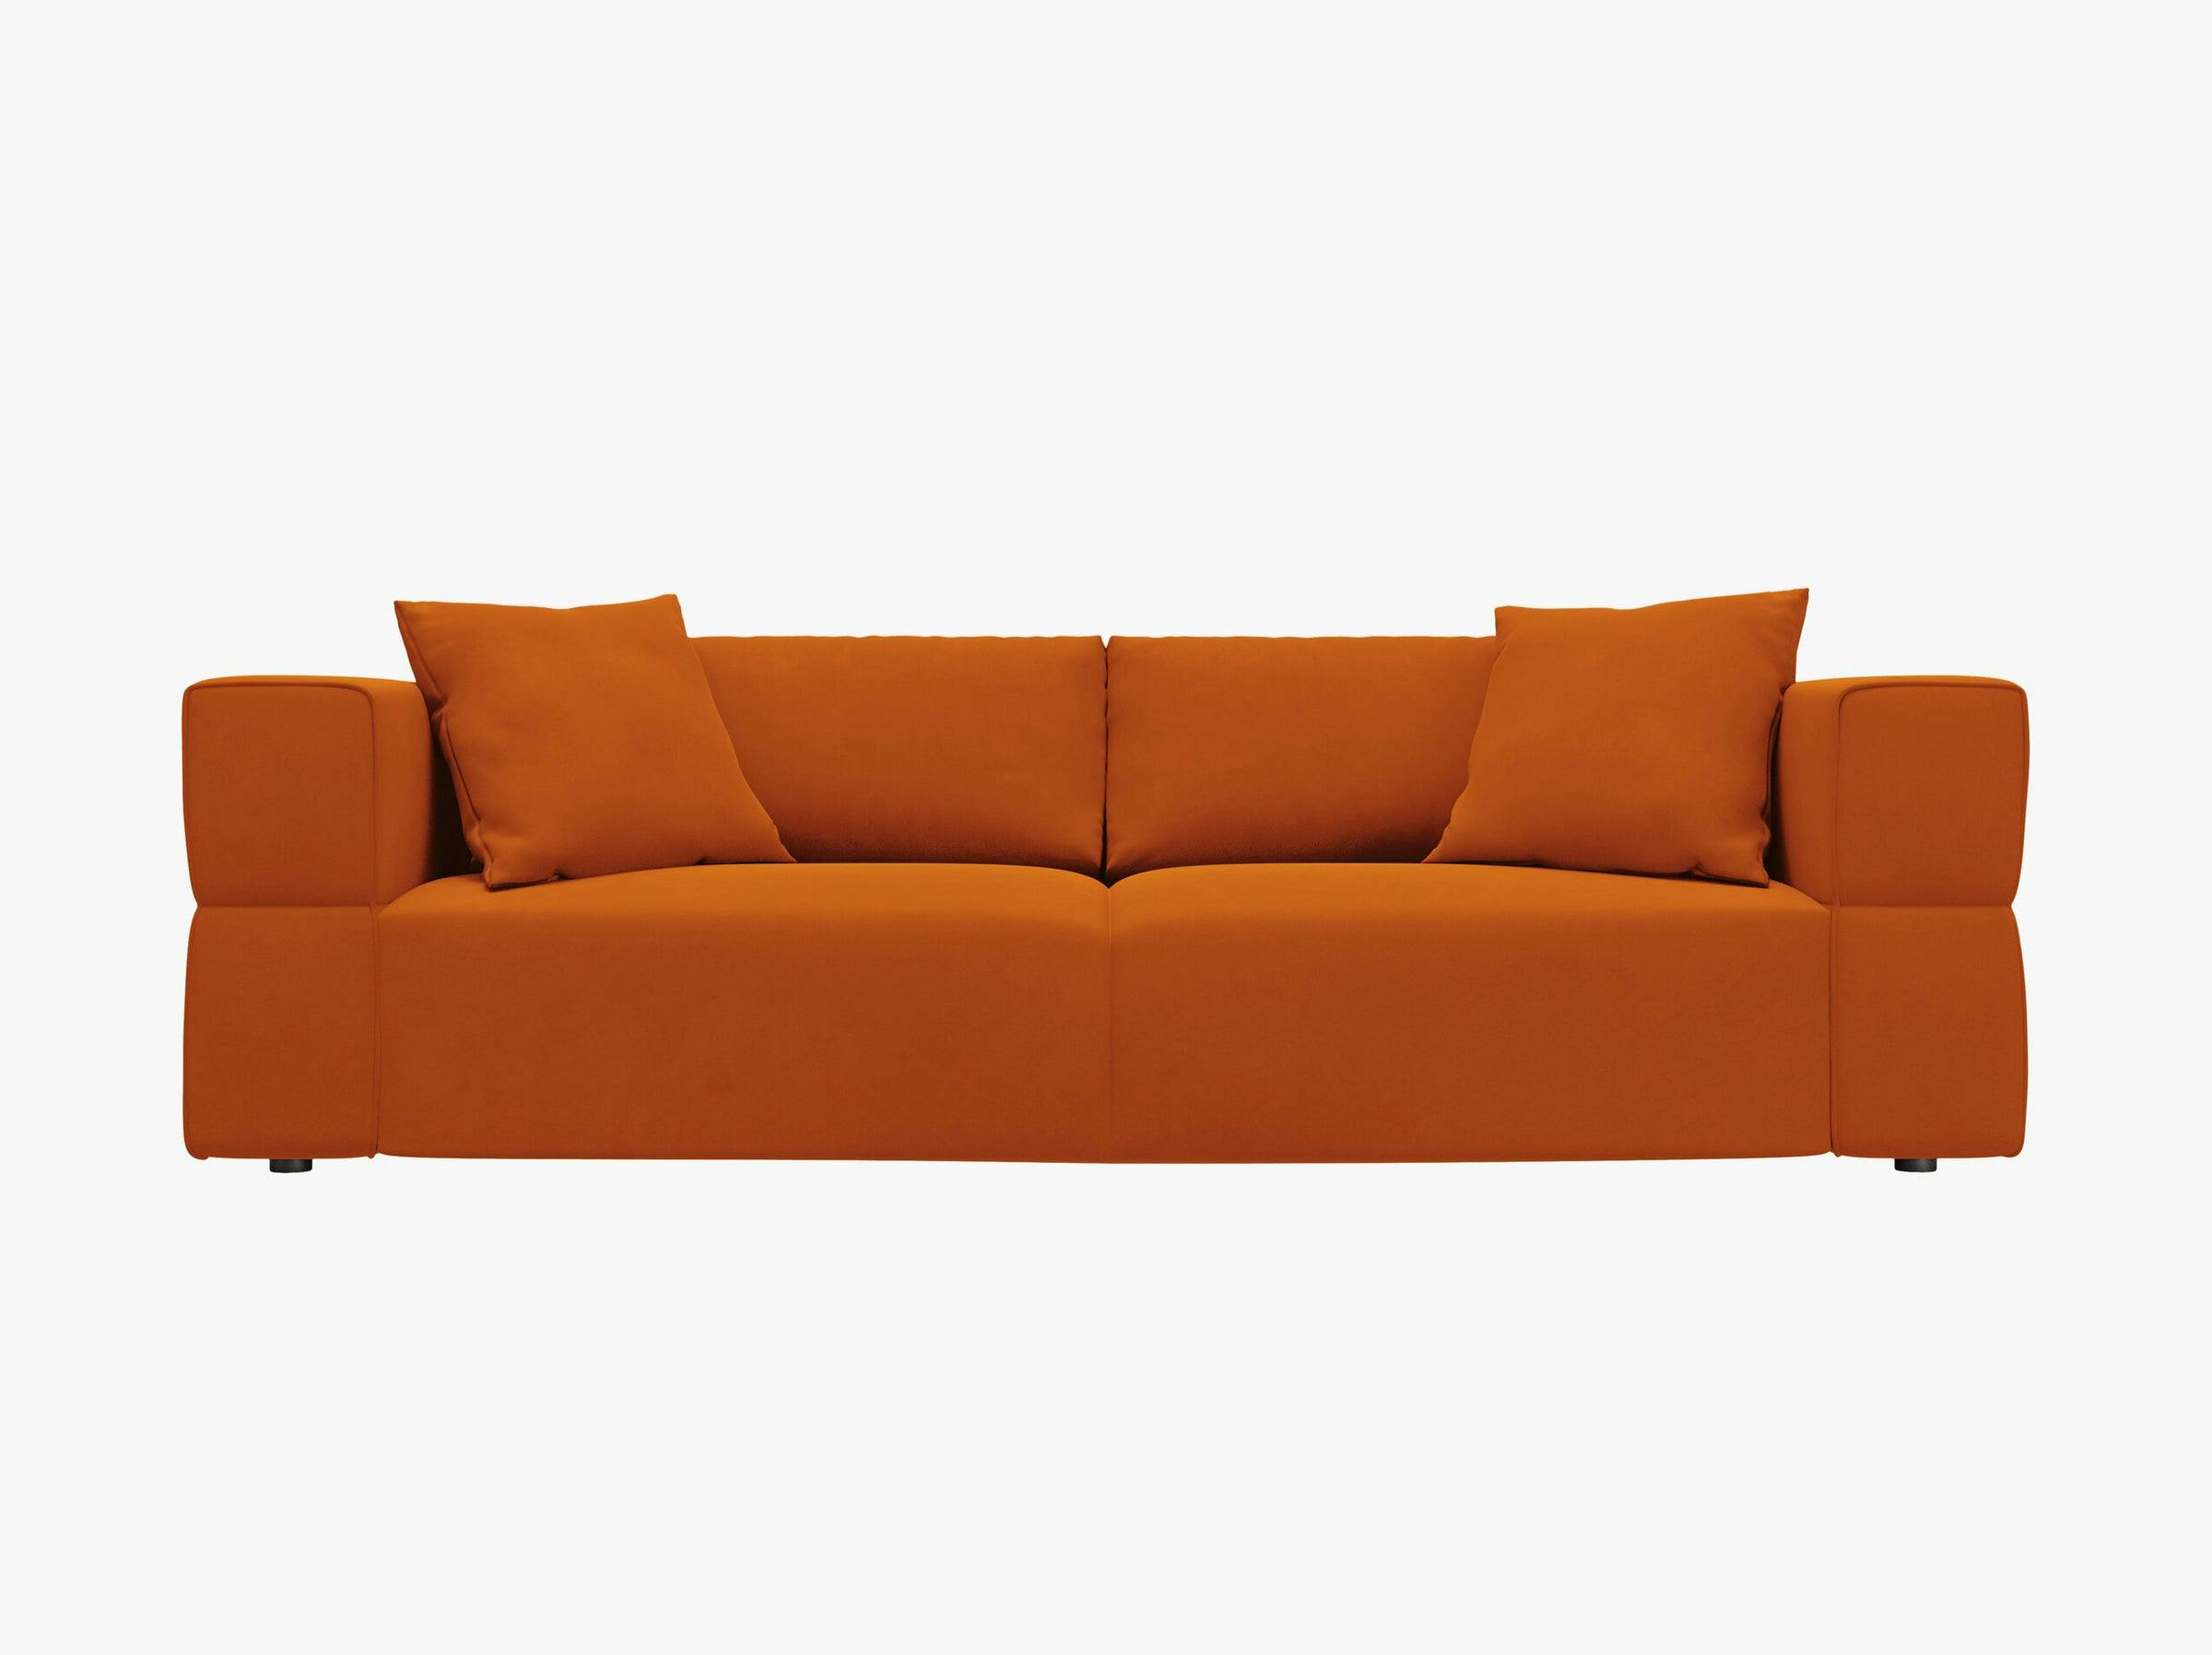 Tyra sofas velvet terracotta